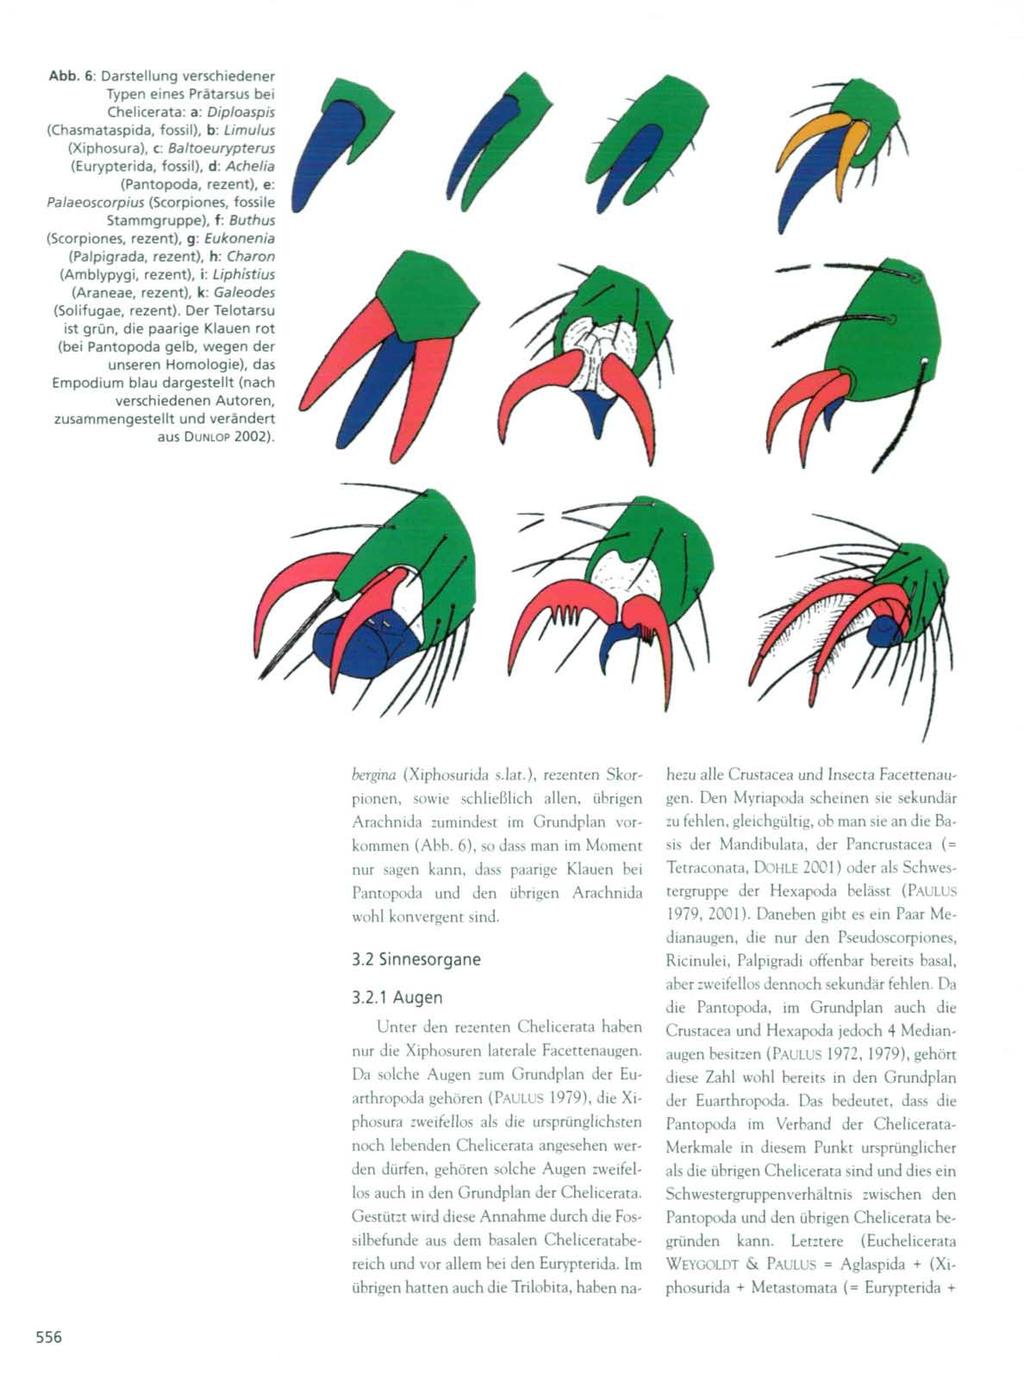 Abb. 6: Darstellung verschiedener Typen eines Prätarsus bei Chelicerata: a: Diploaspis (Chasmataspida, fossil), b: Limulus (Xiphosura), c: Baltoeurypterus (Eurypterida, fossil), d: Achelia